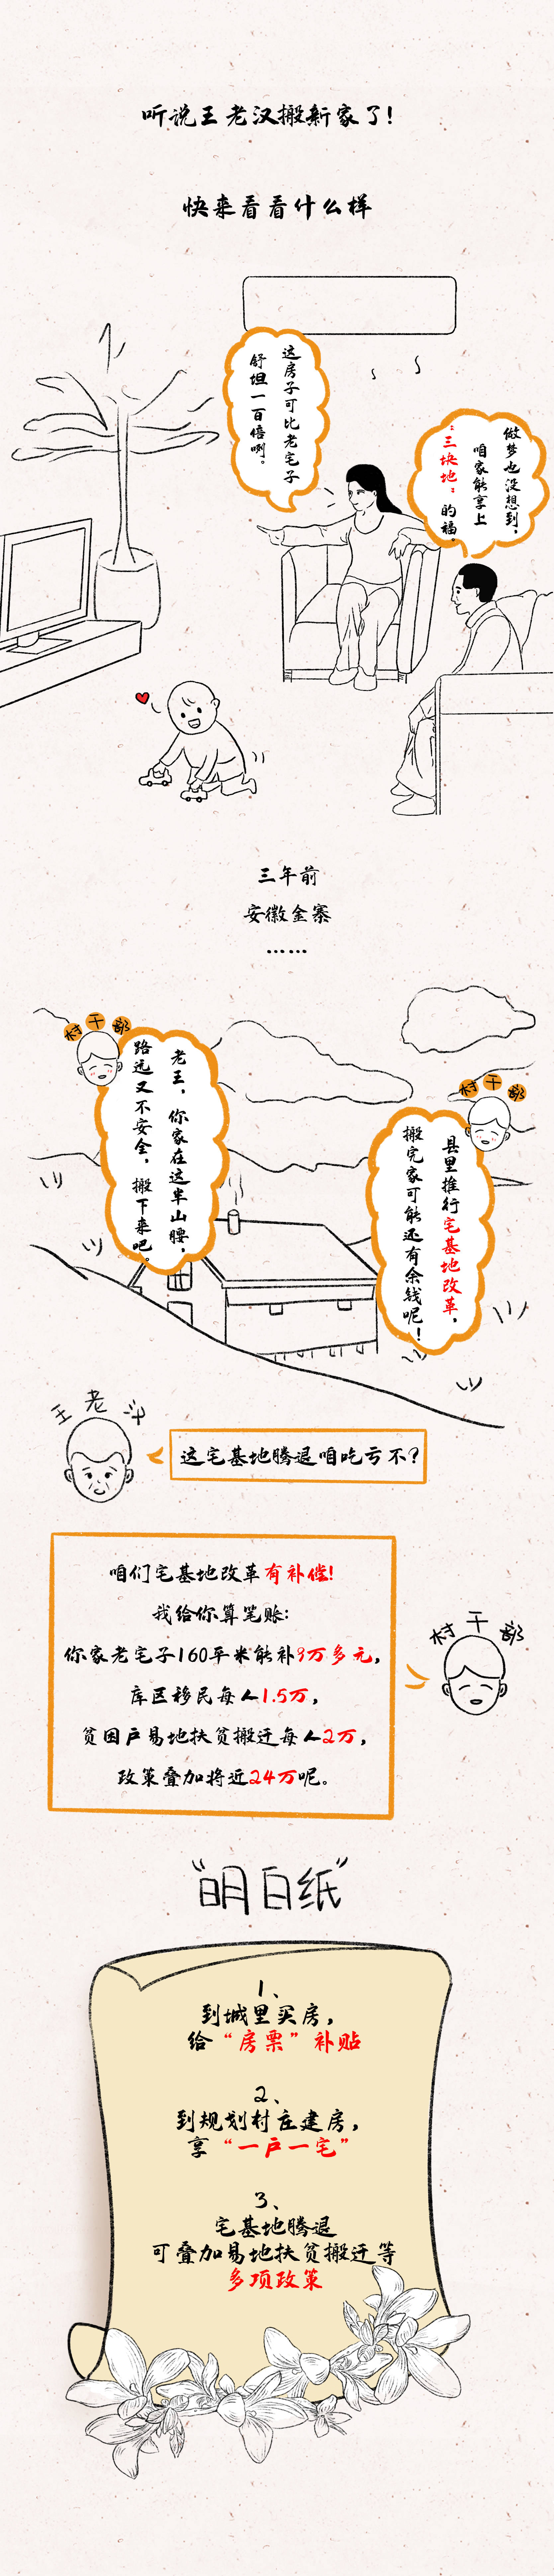 漫画图解丨王老汉家的“三块地”